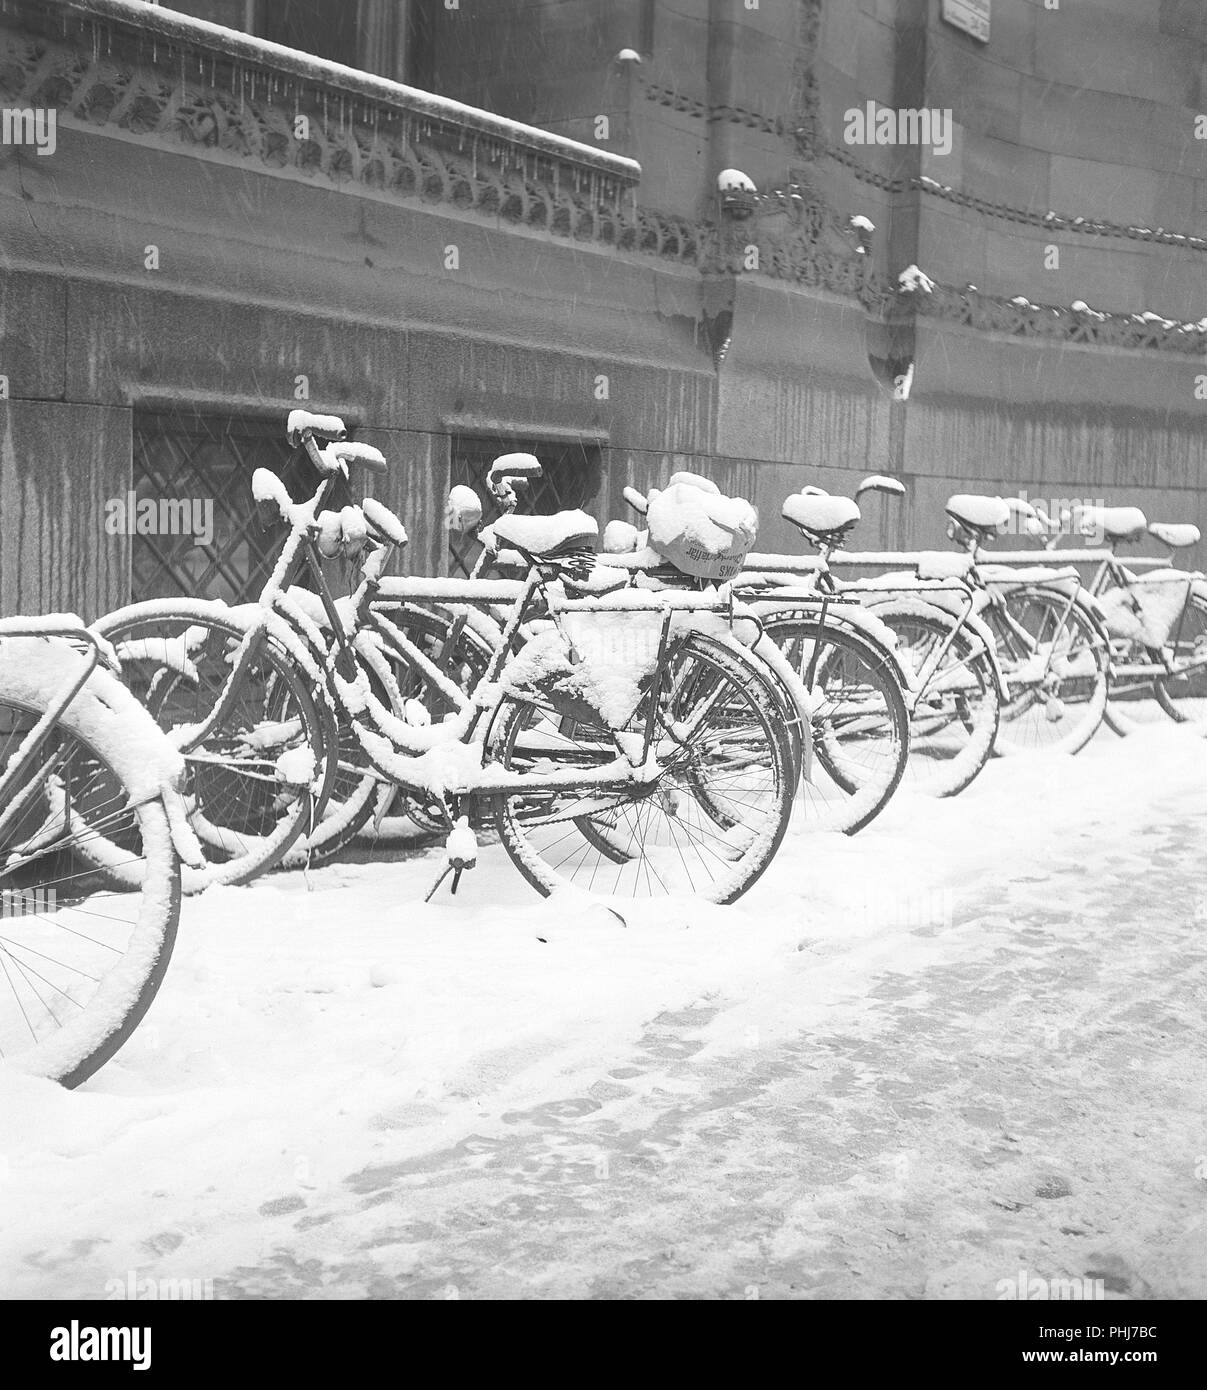 1950s biciclette. Le biciclette sono parcheggiate lungo il marciapiede in una giornata di inverni innevati. Svezia 1950. Foto Kristoffersson AY59-5 Foto Stock